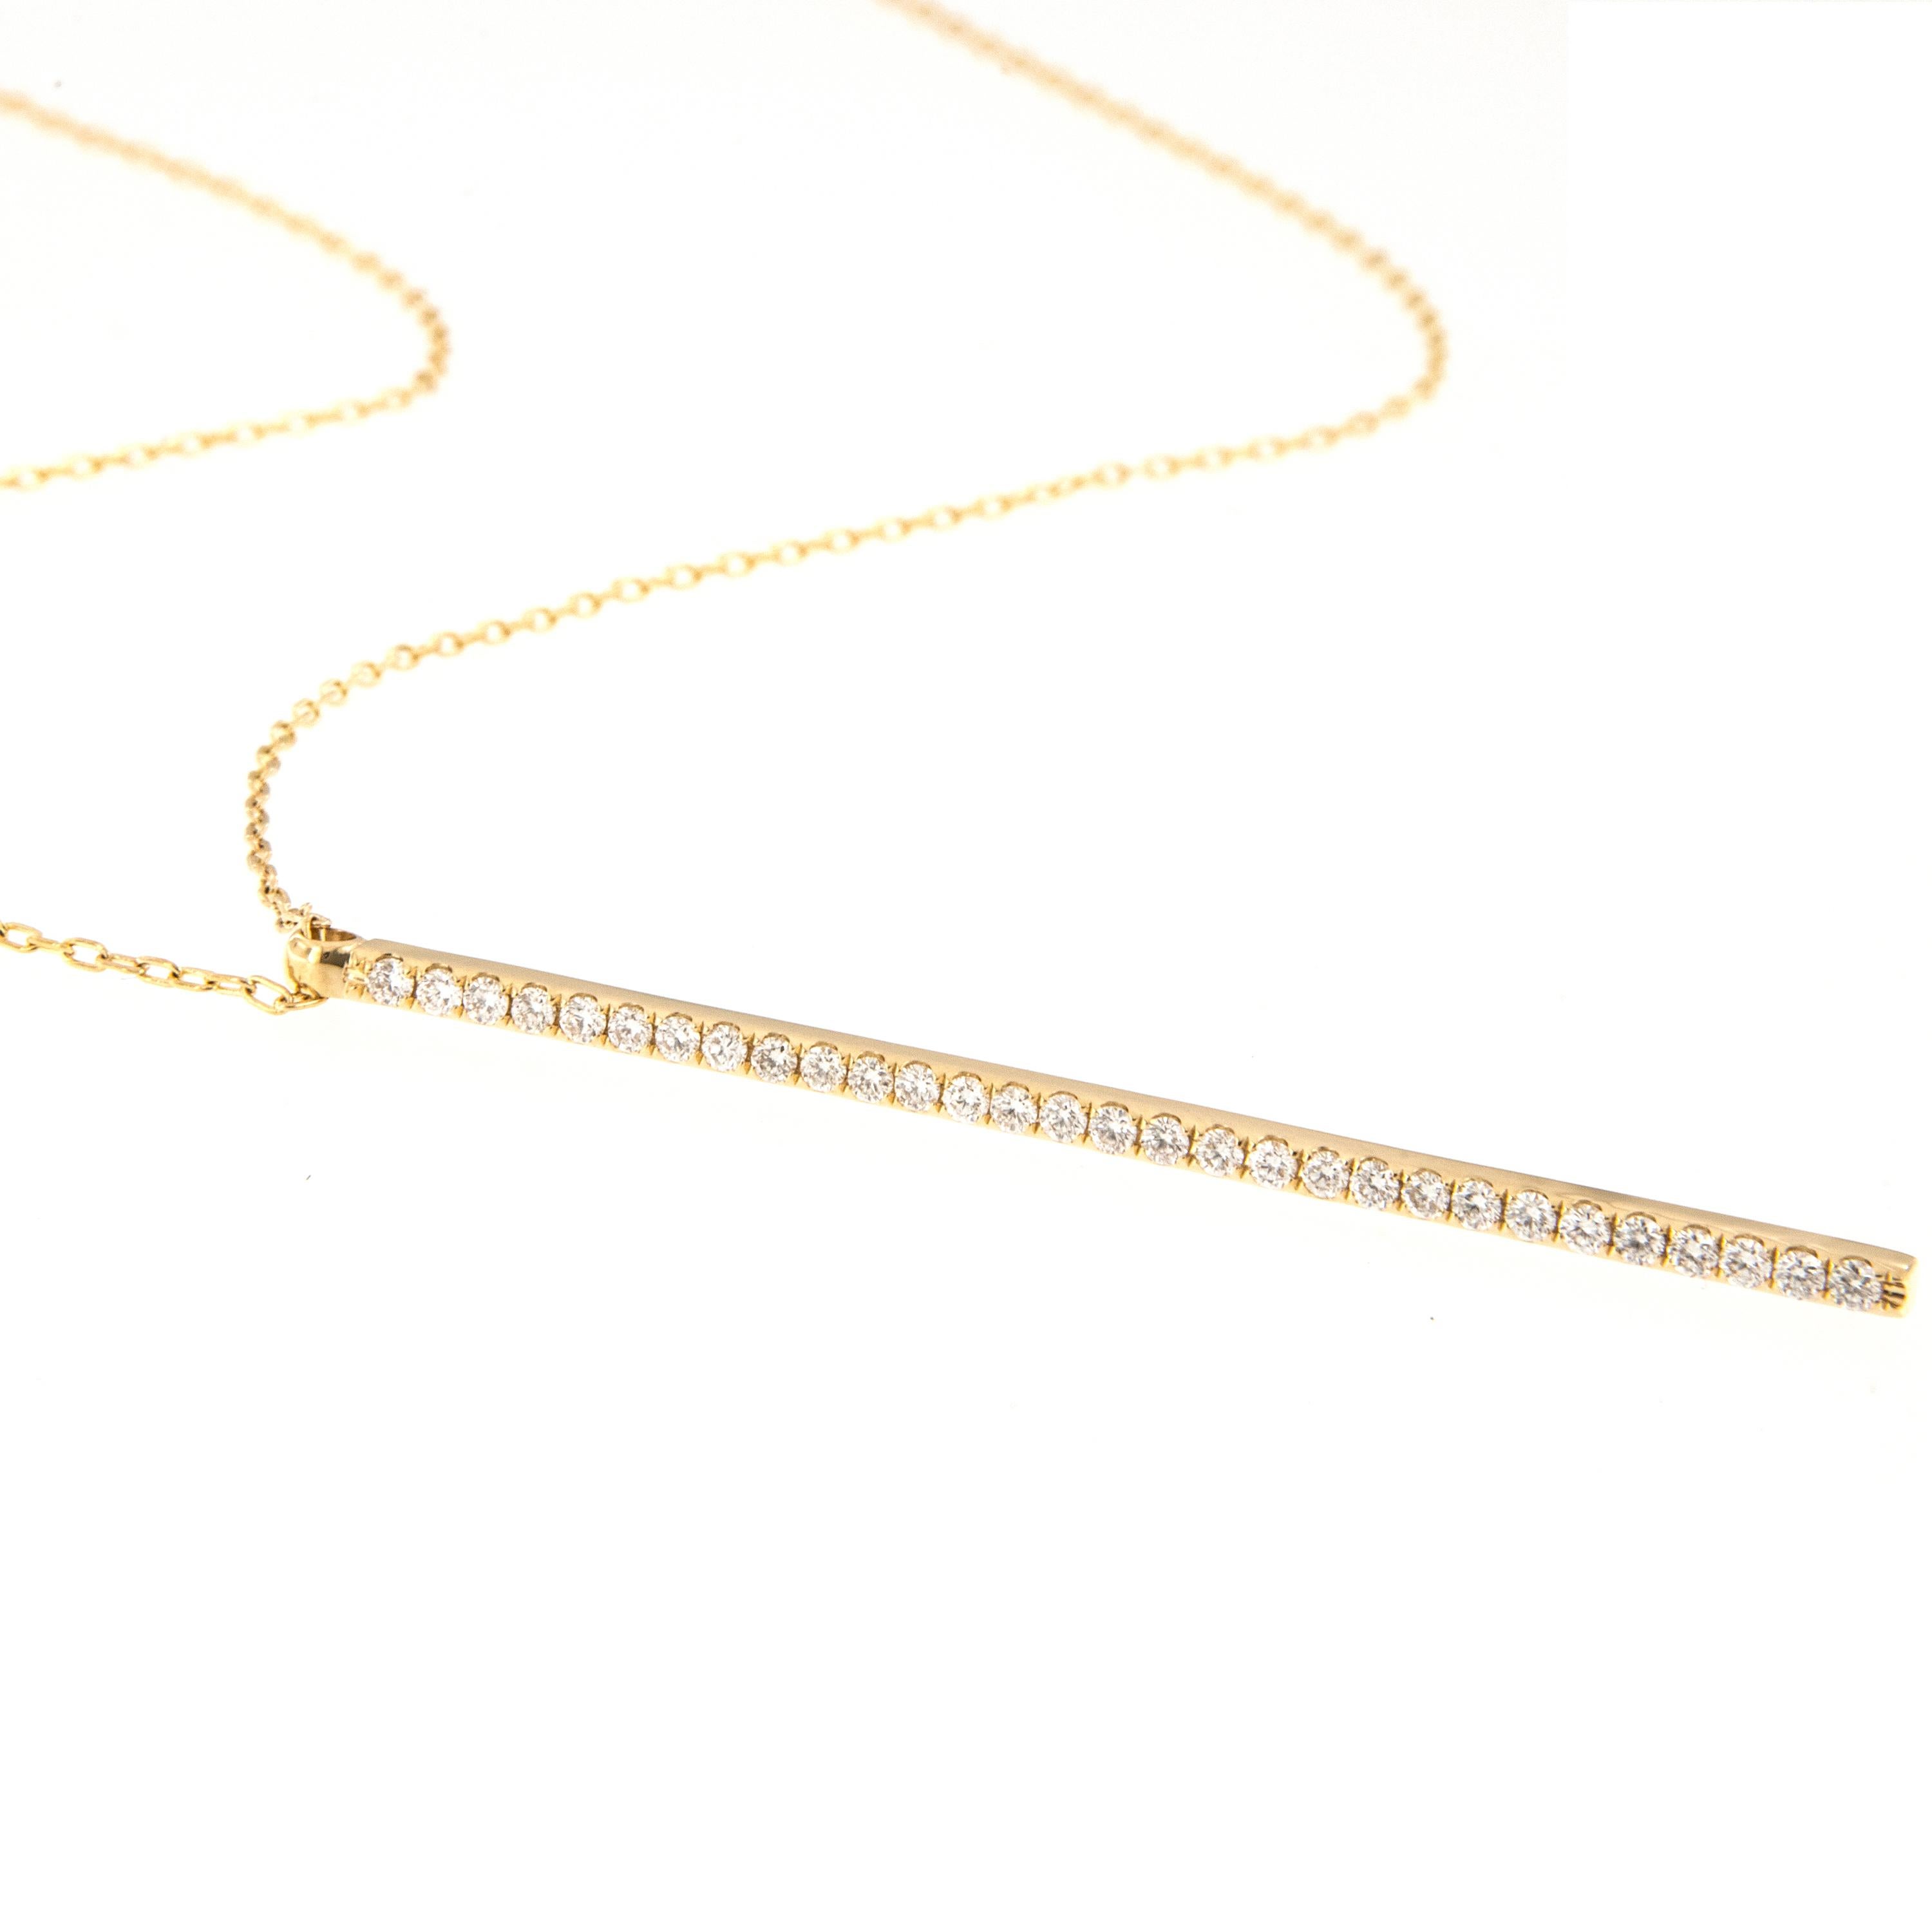 Fabriqué en or jaune 18 carats, ce collier de diamants en forme de goutte d'eau ne manquera pas de plaire ! Avec 0,60 Cttw de diamants fins VS scintillant dans la barre de 57 mm de long sur une chaîne de 18